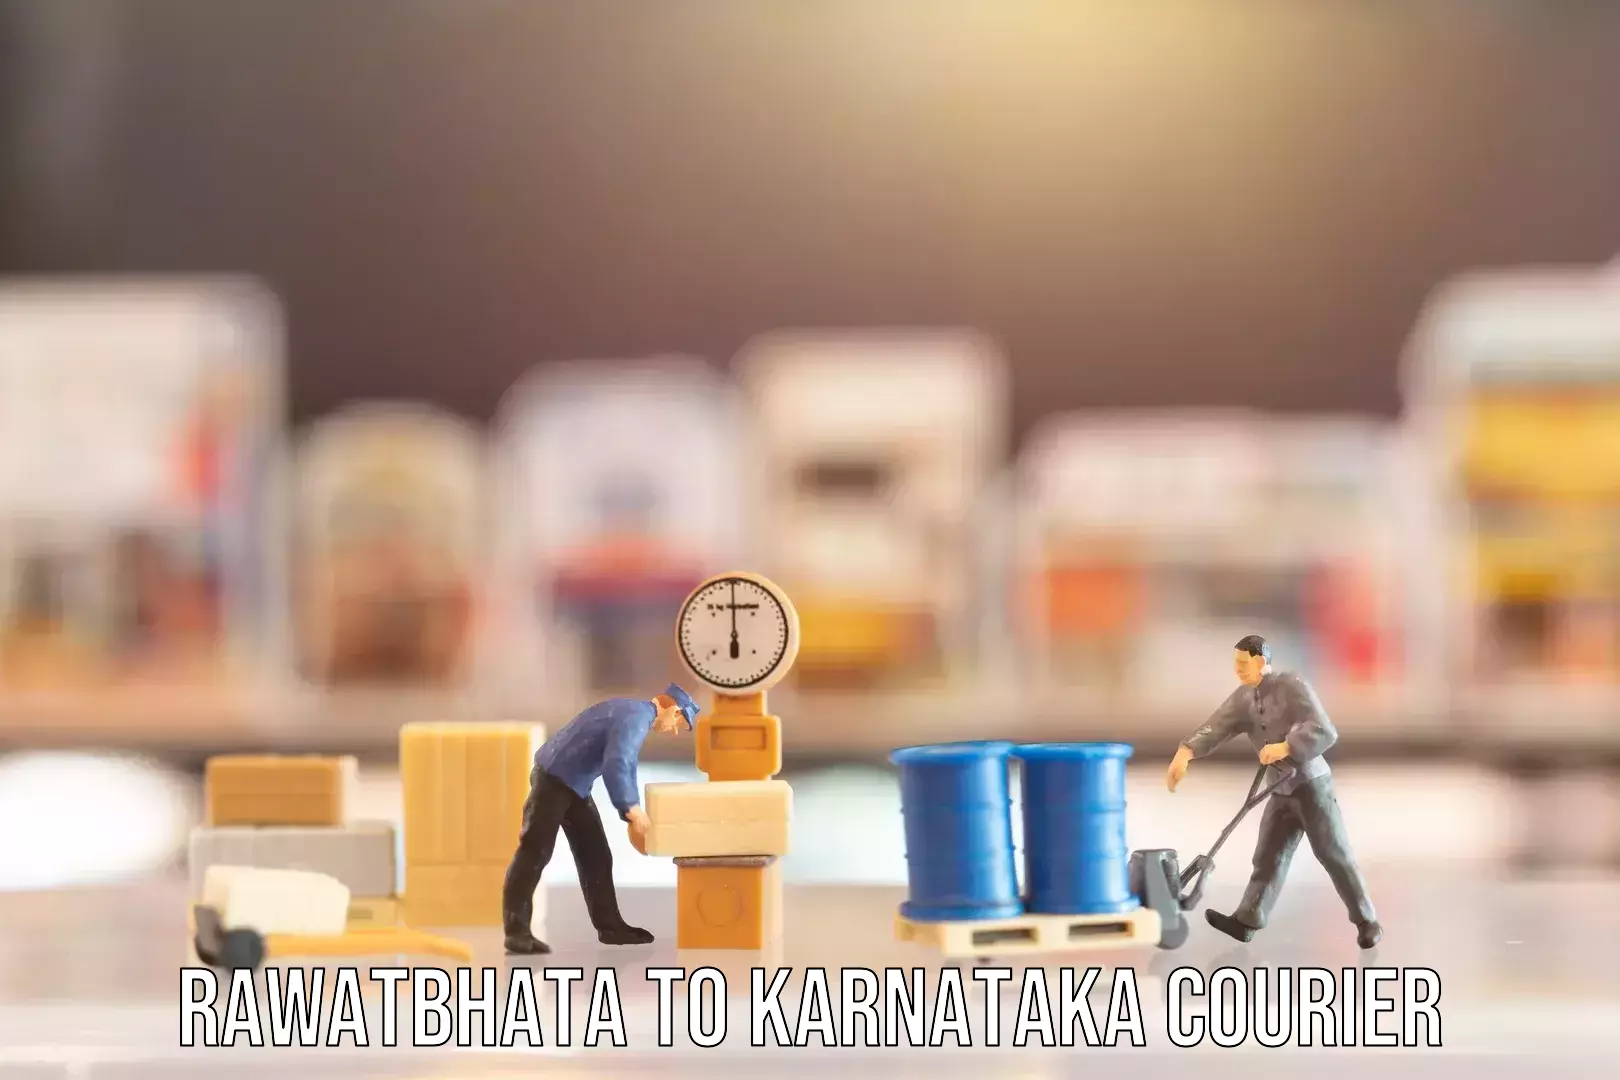 Baggage delivery optimization Rawatbhata to Karnataka